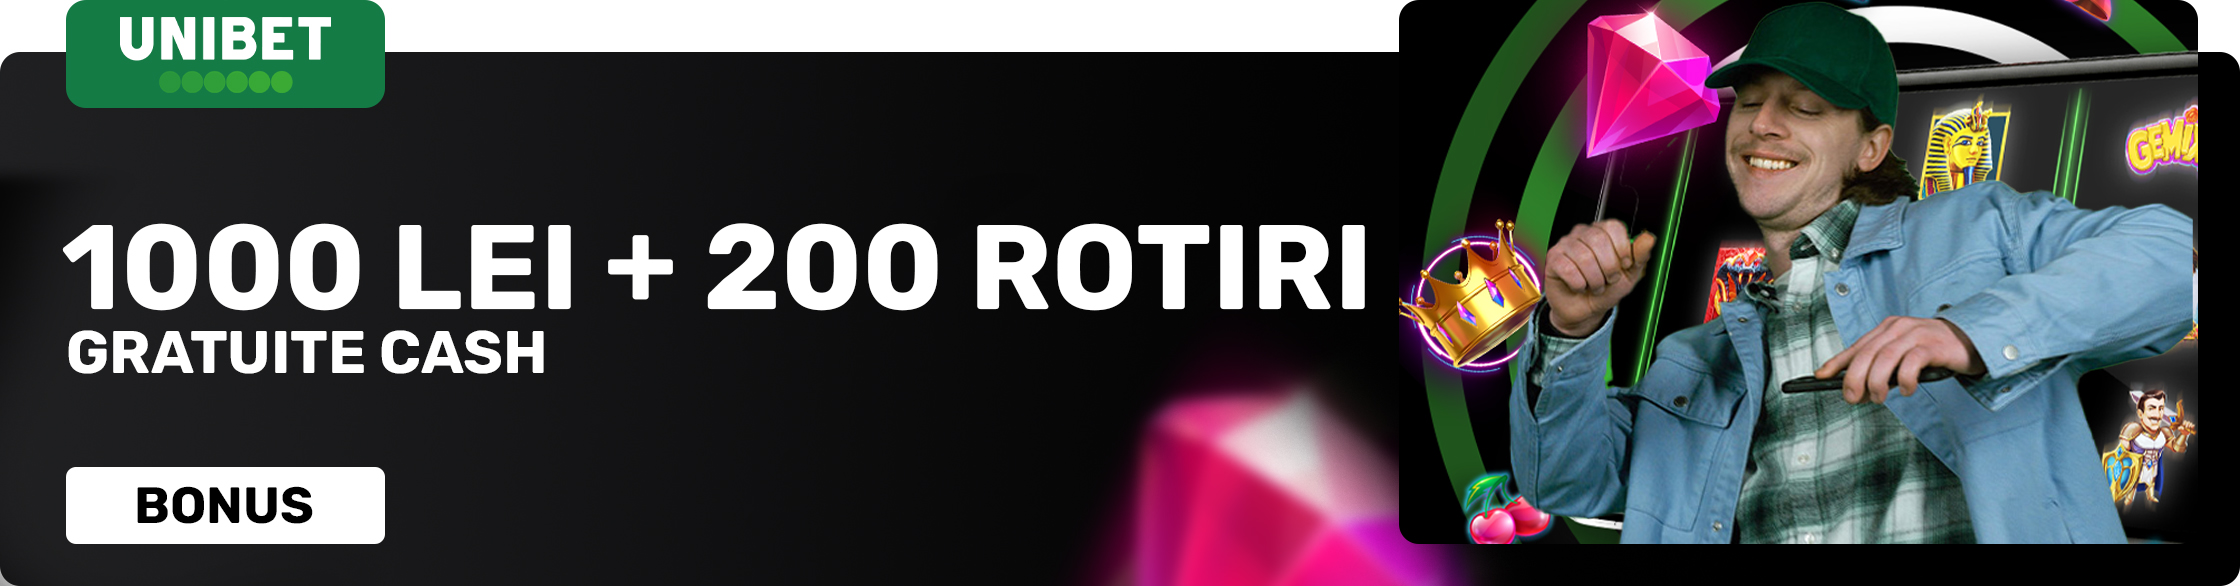 Unibet - Bonus Casino 1000 Lei + 200 Rotiri Gratuite